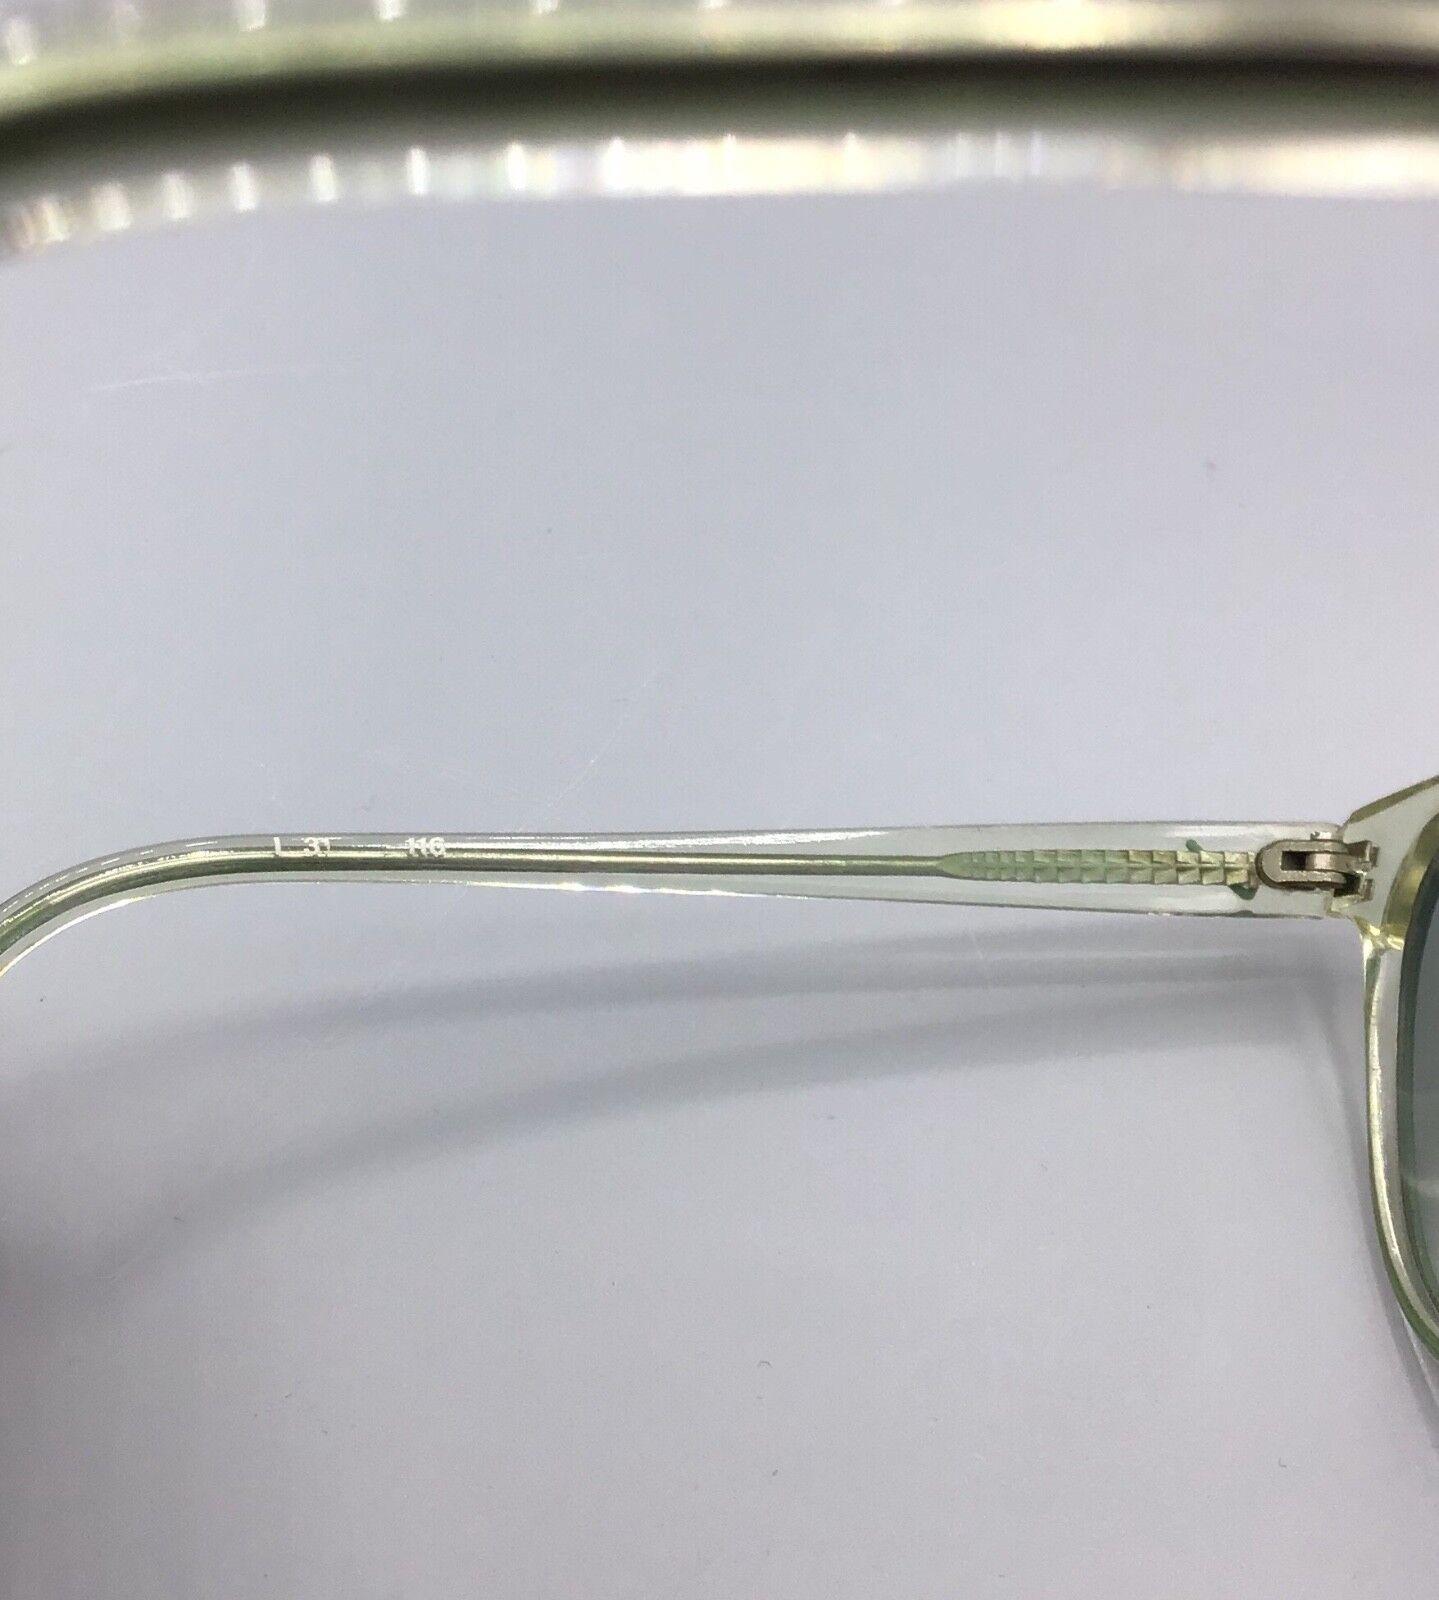 occhiale vintage Vogart model L31 116 da sole sunglasses sonnenbrillen lunettes